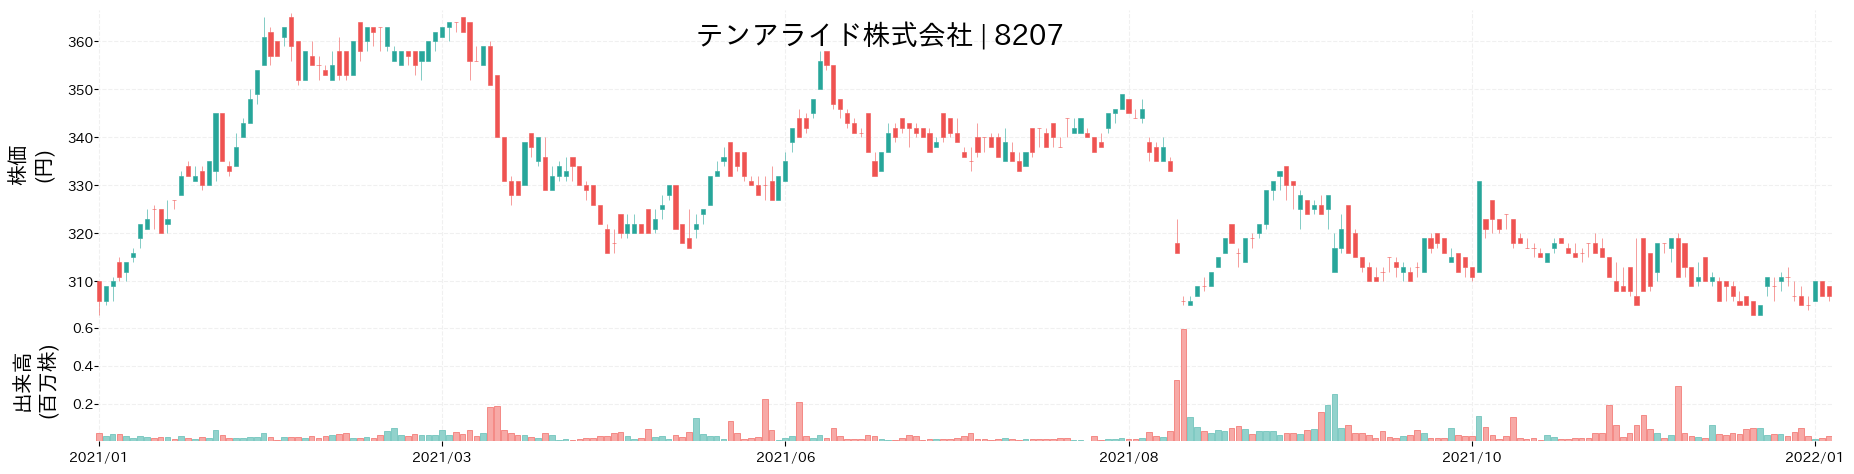 テンアライドの株価推移(2021)